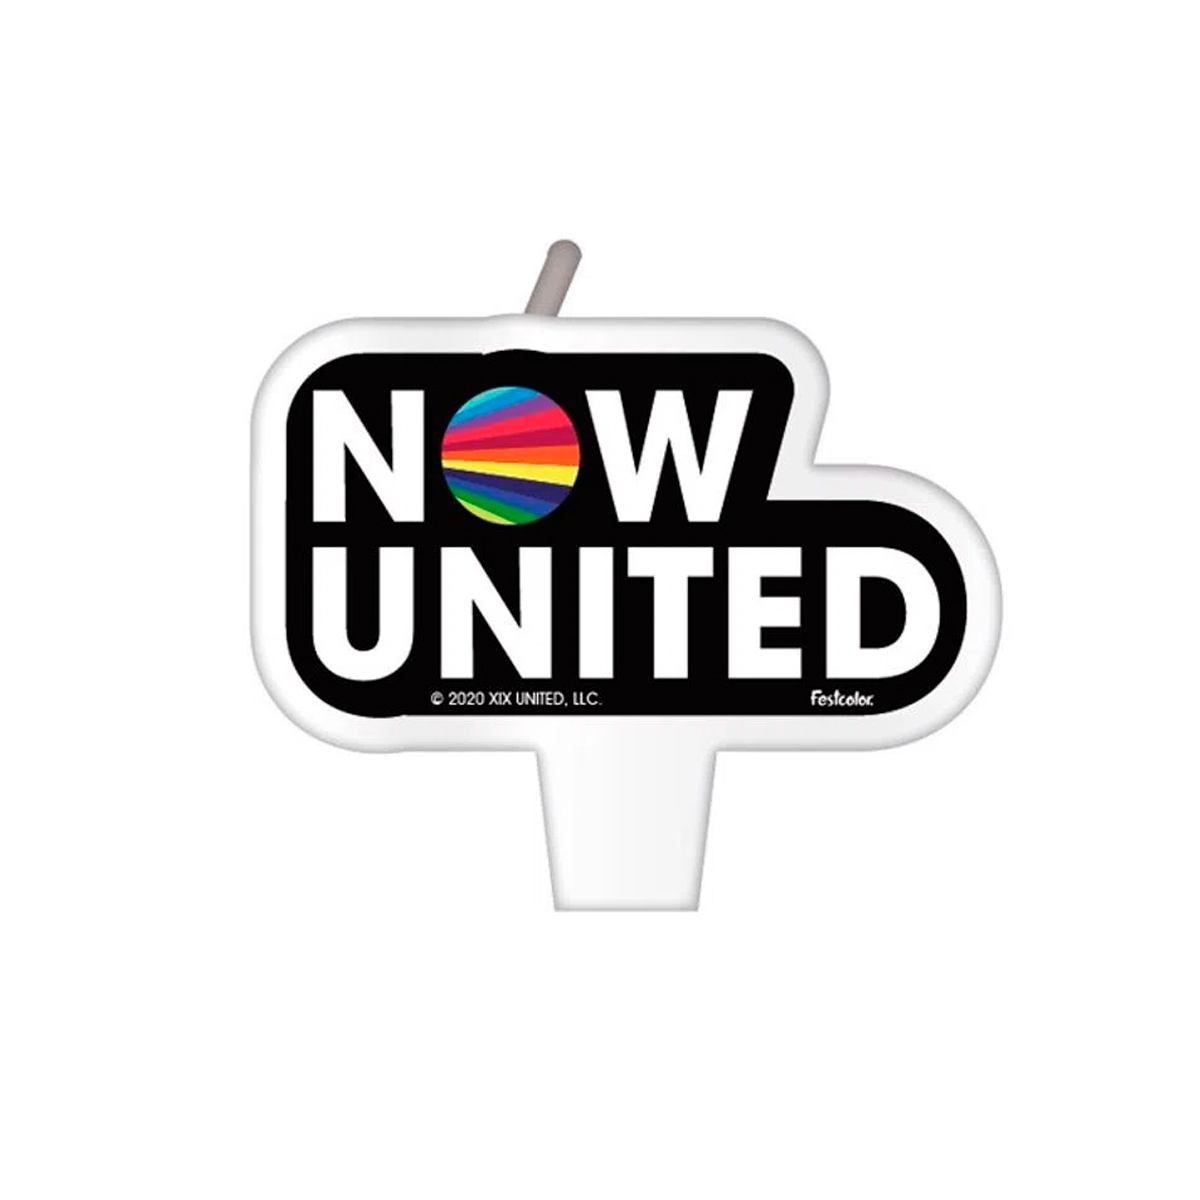 Vela de Aniversário Now United Original Sem número Pavio Mágico